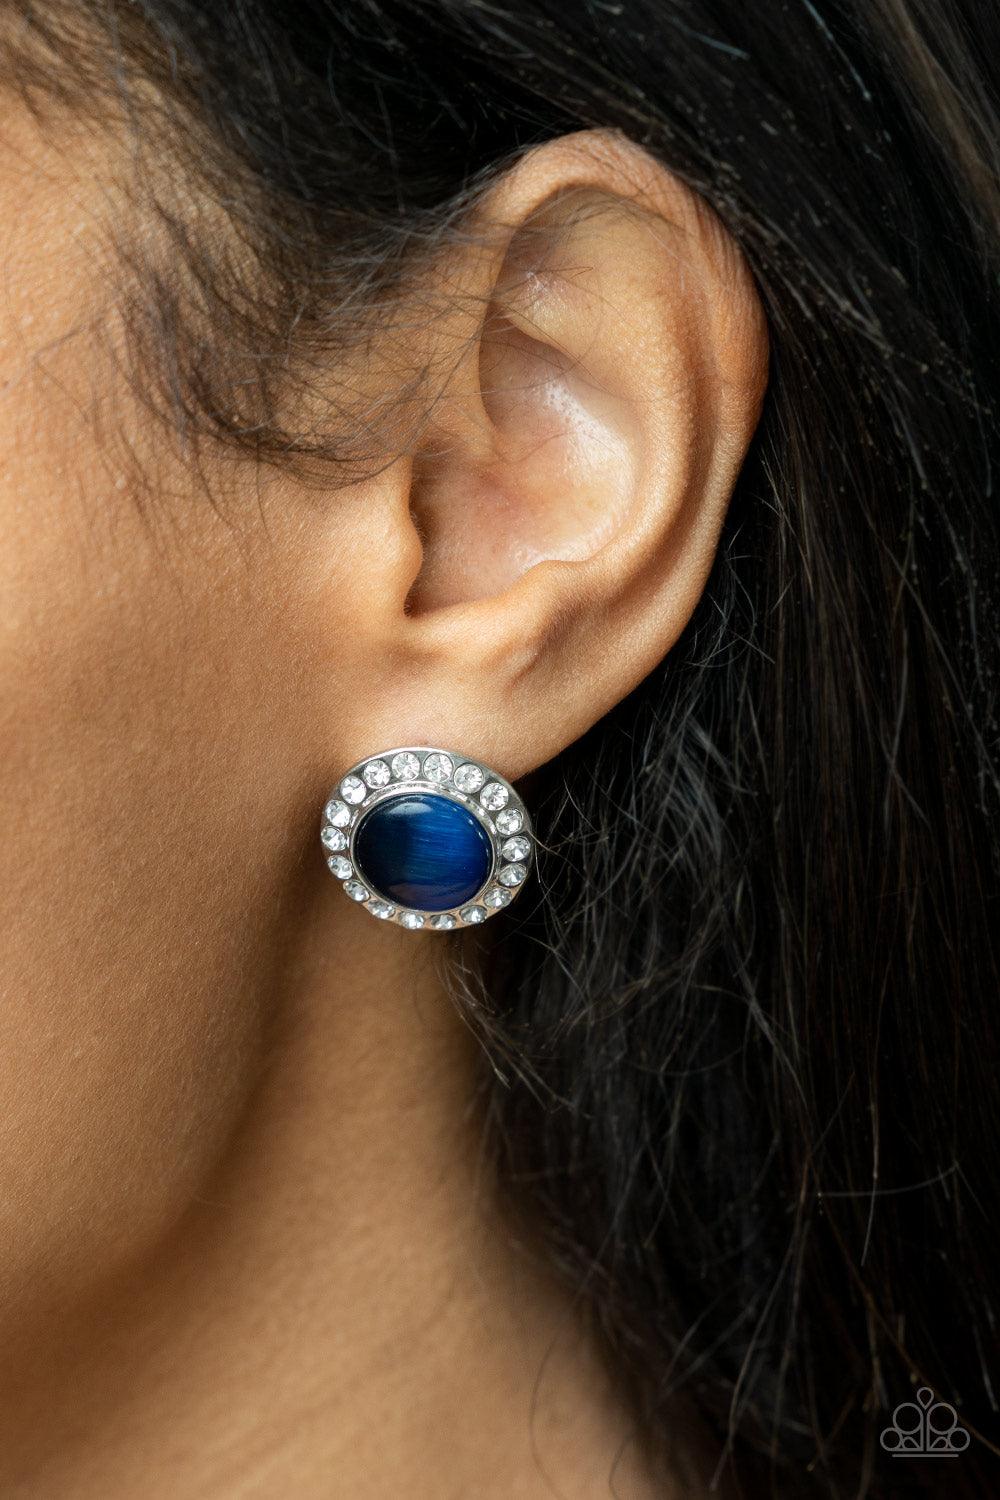 Glowing Dazzle Blue Earrings - Jewelry by Bretta